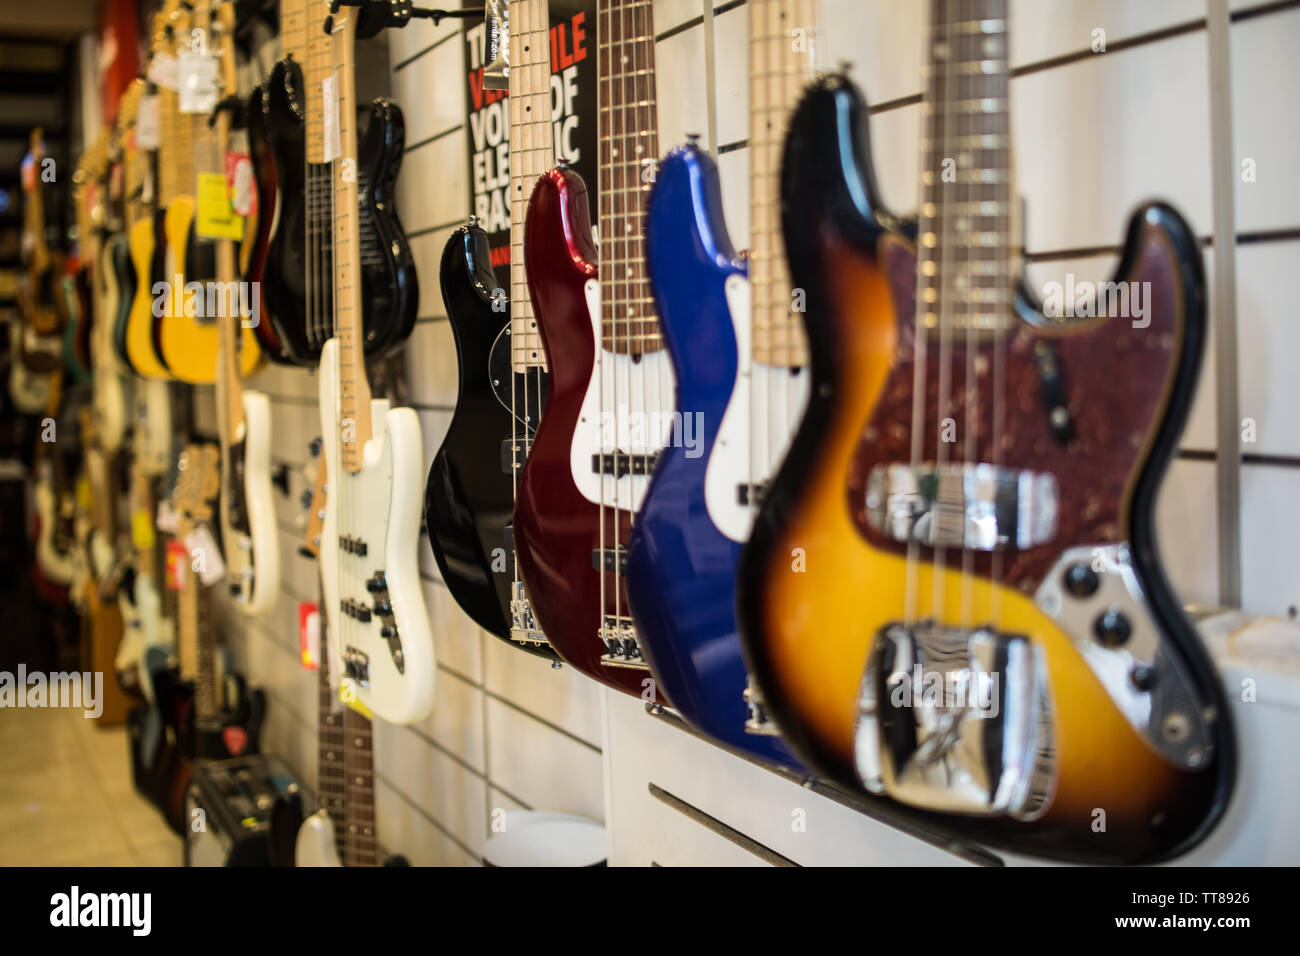 Guitares Basses accroché au mur du magasin de musique vente Photo Stock -  Alamy